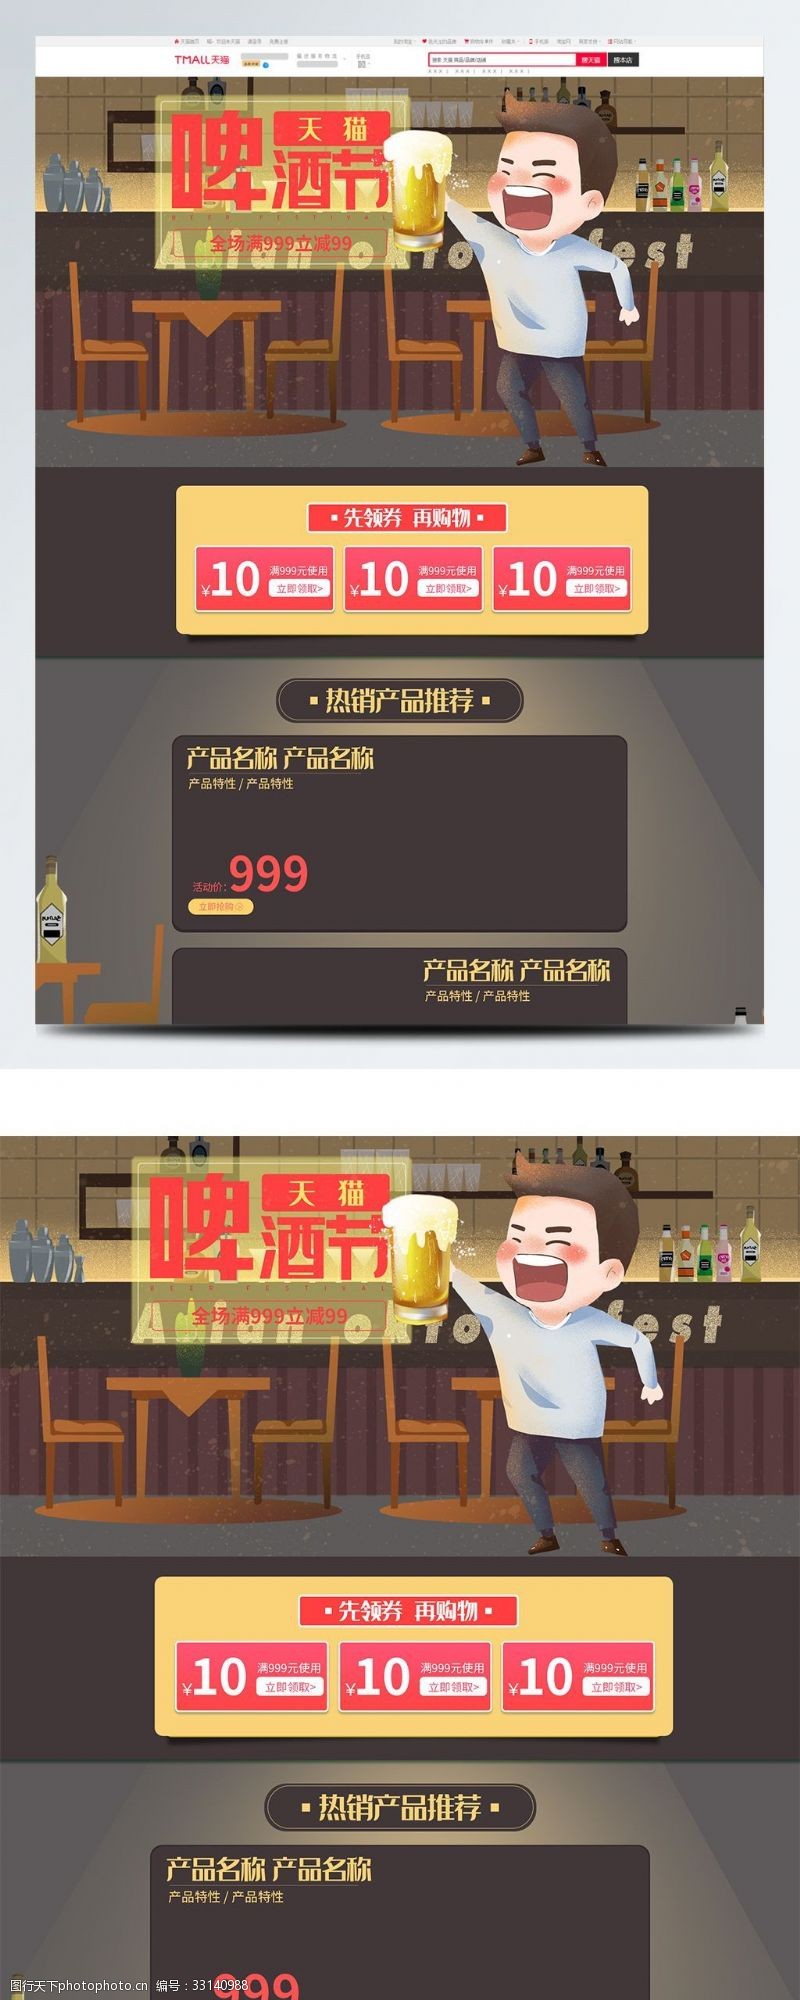 天猫食品专题页电商手绘插画天猫啤酒节活动首页模板